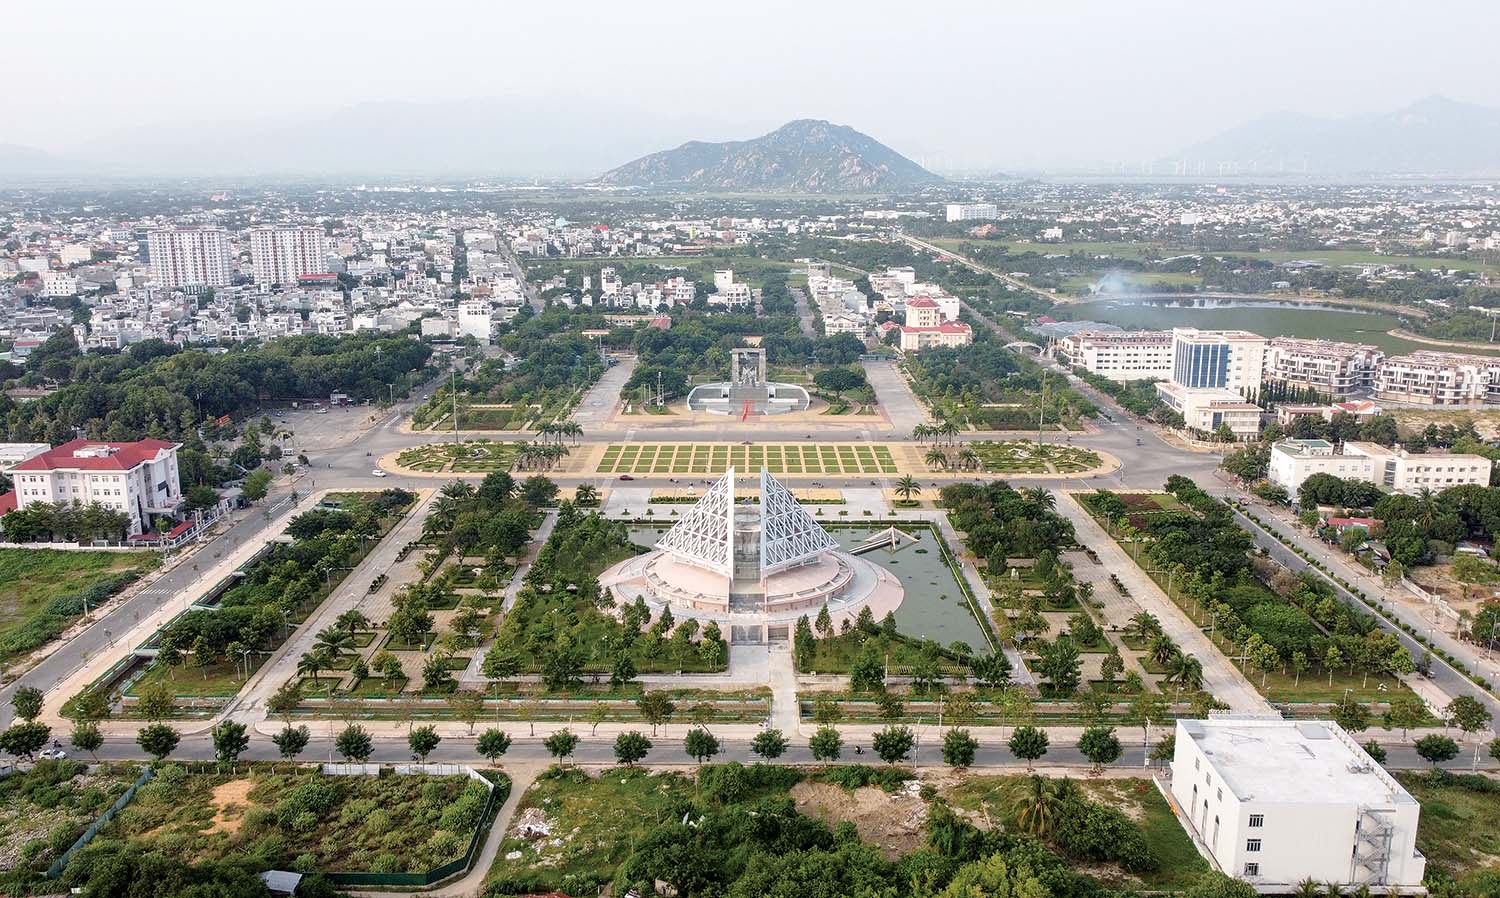  Hội tụ những giá trị khác biệt, Ninh Thuận đang phát triển mạnh mẽ, vững tiến đến tương lai